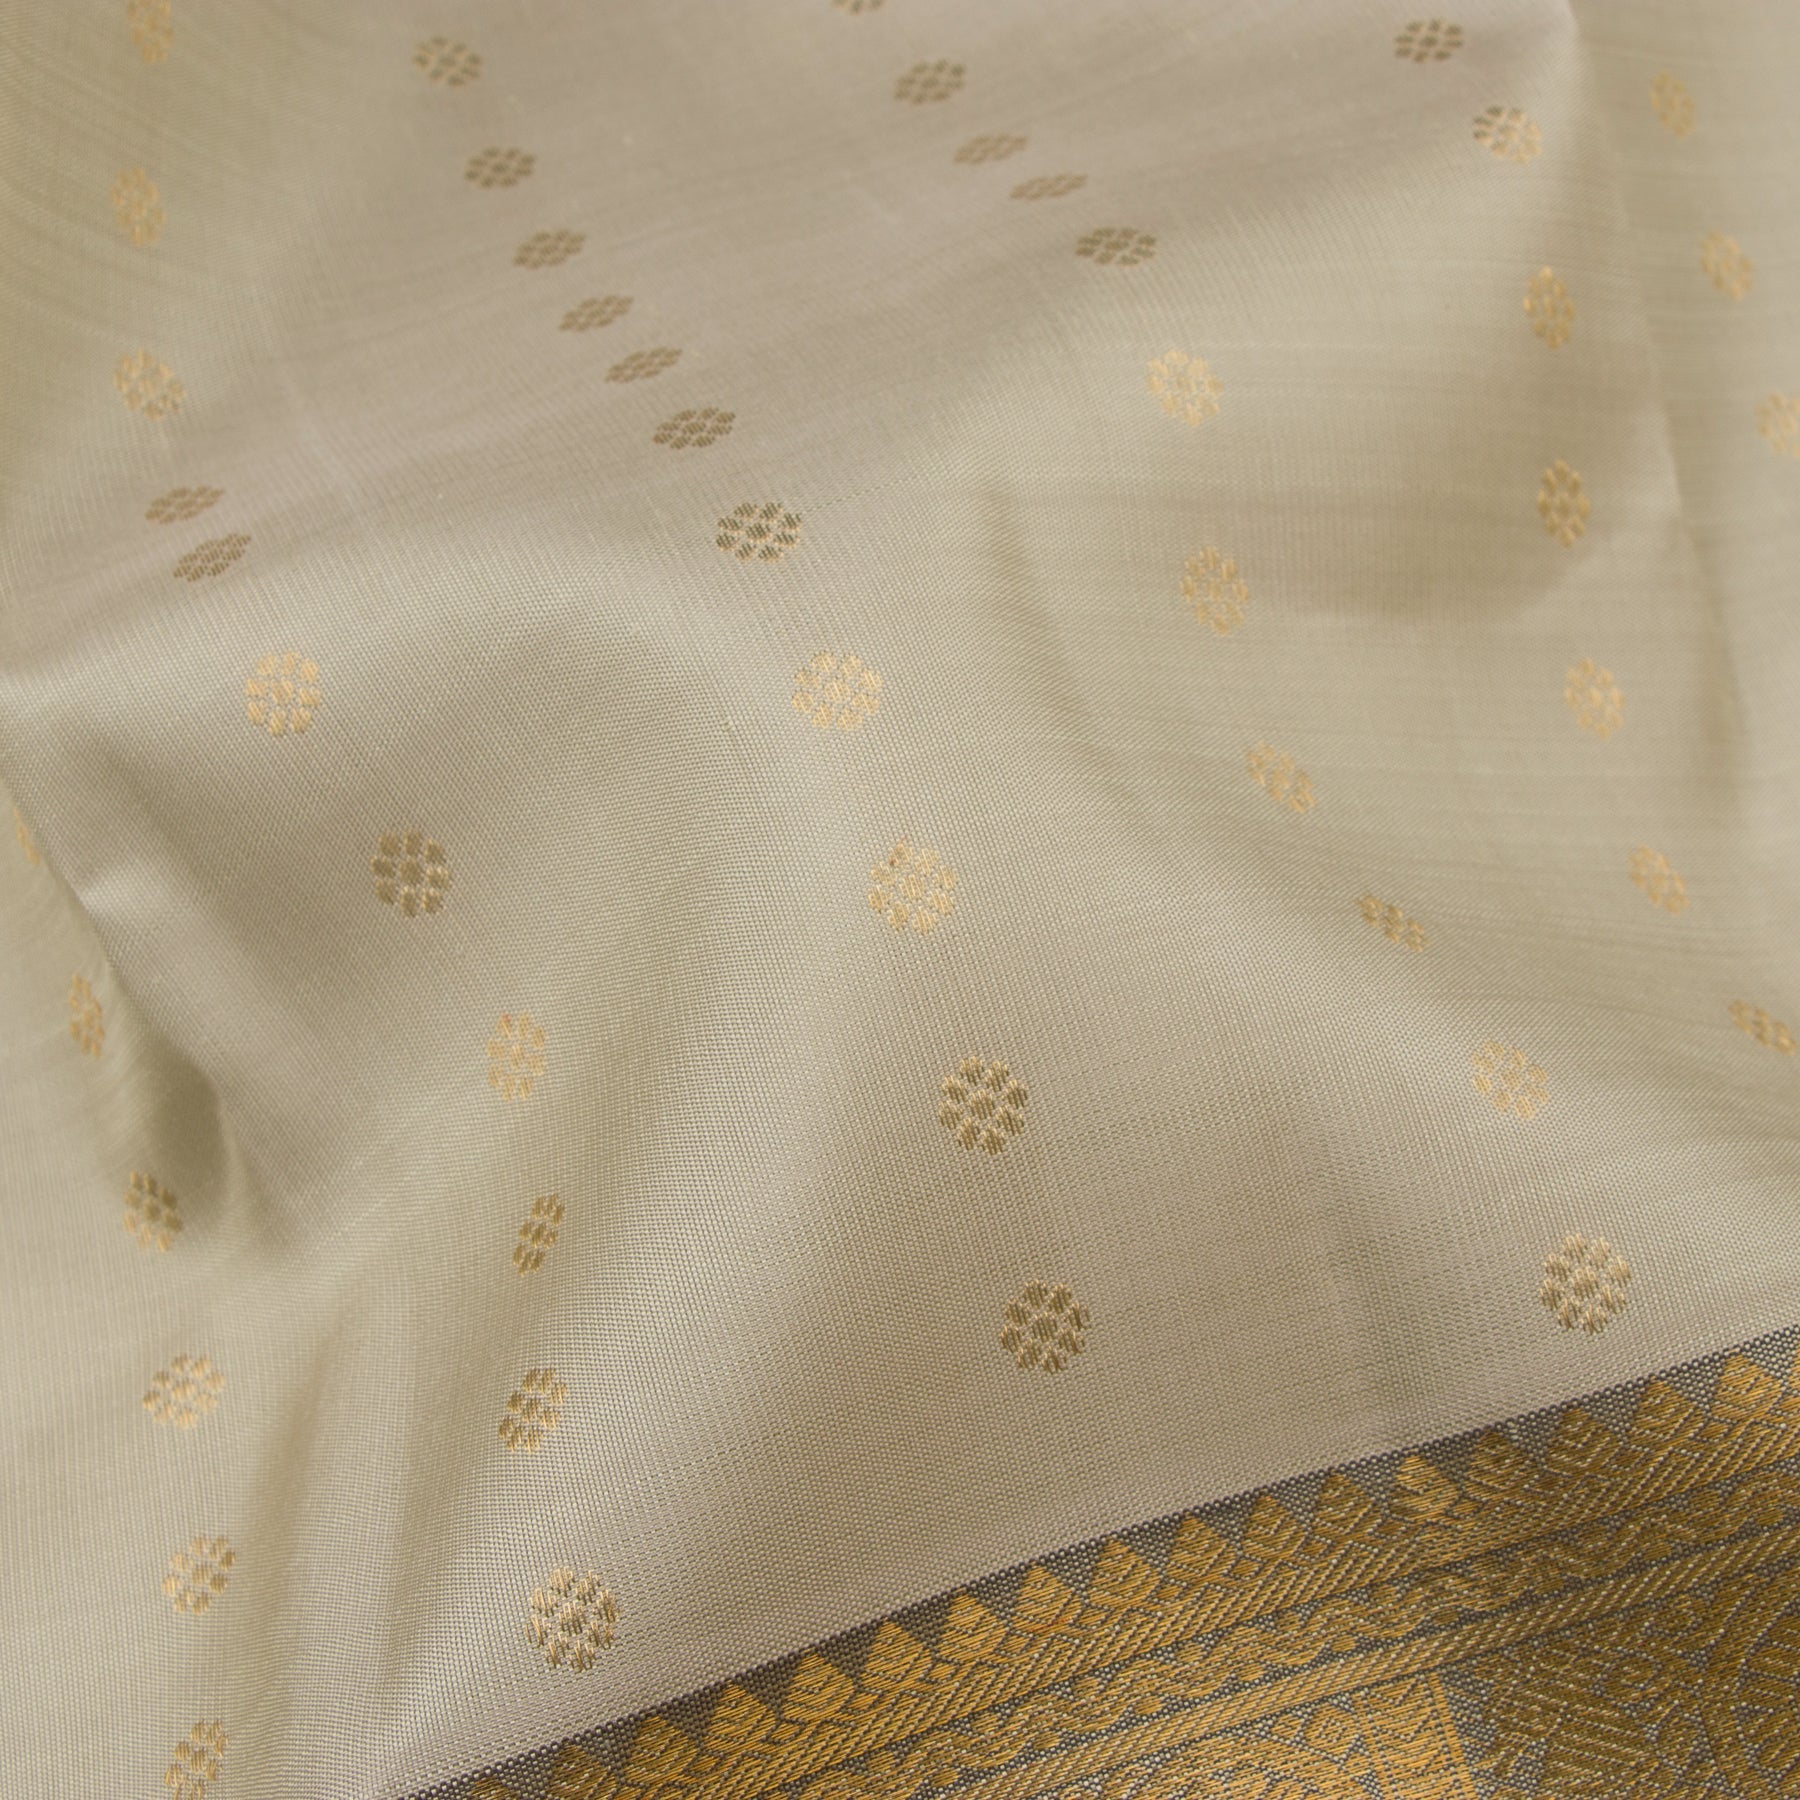 Kanakavalli Kanjivaram Silk Sari 23-595-HS001-02928 - Fabric View